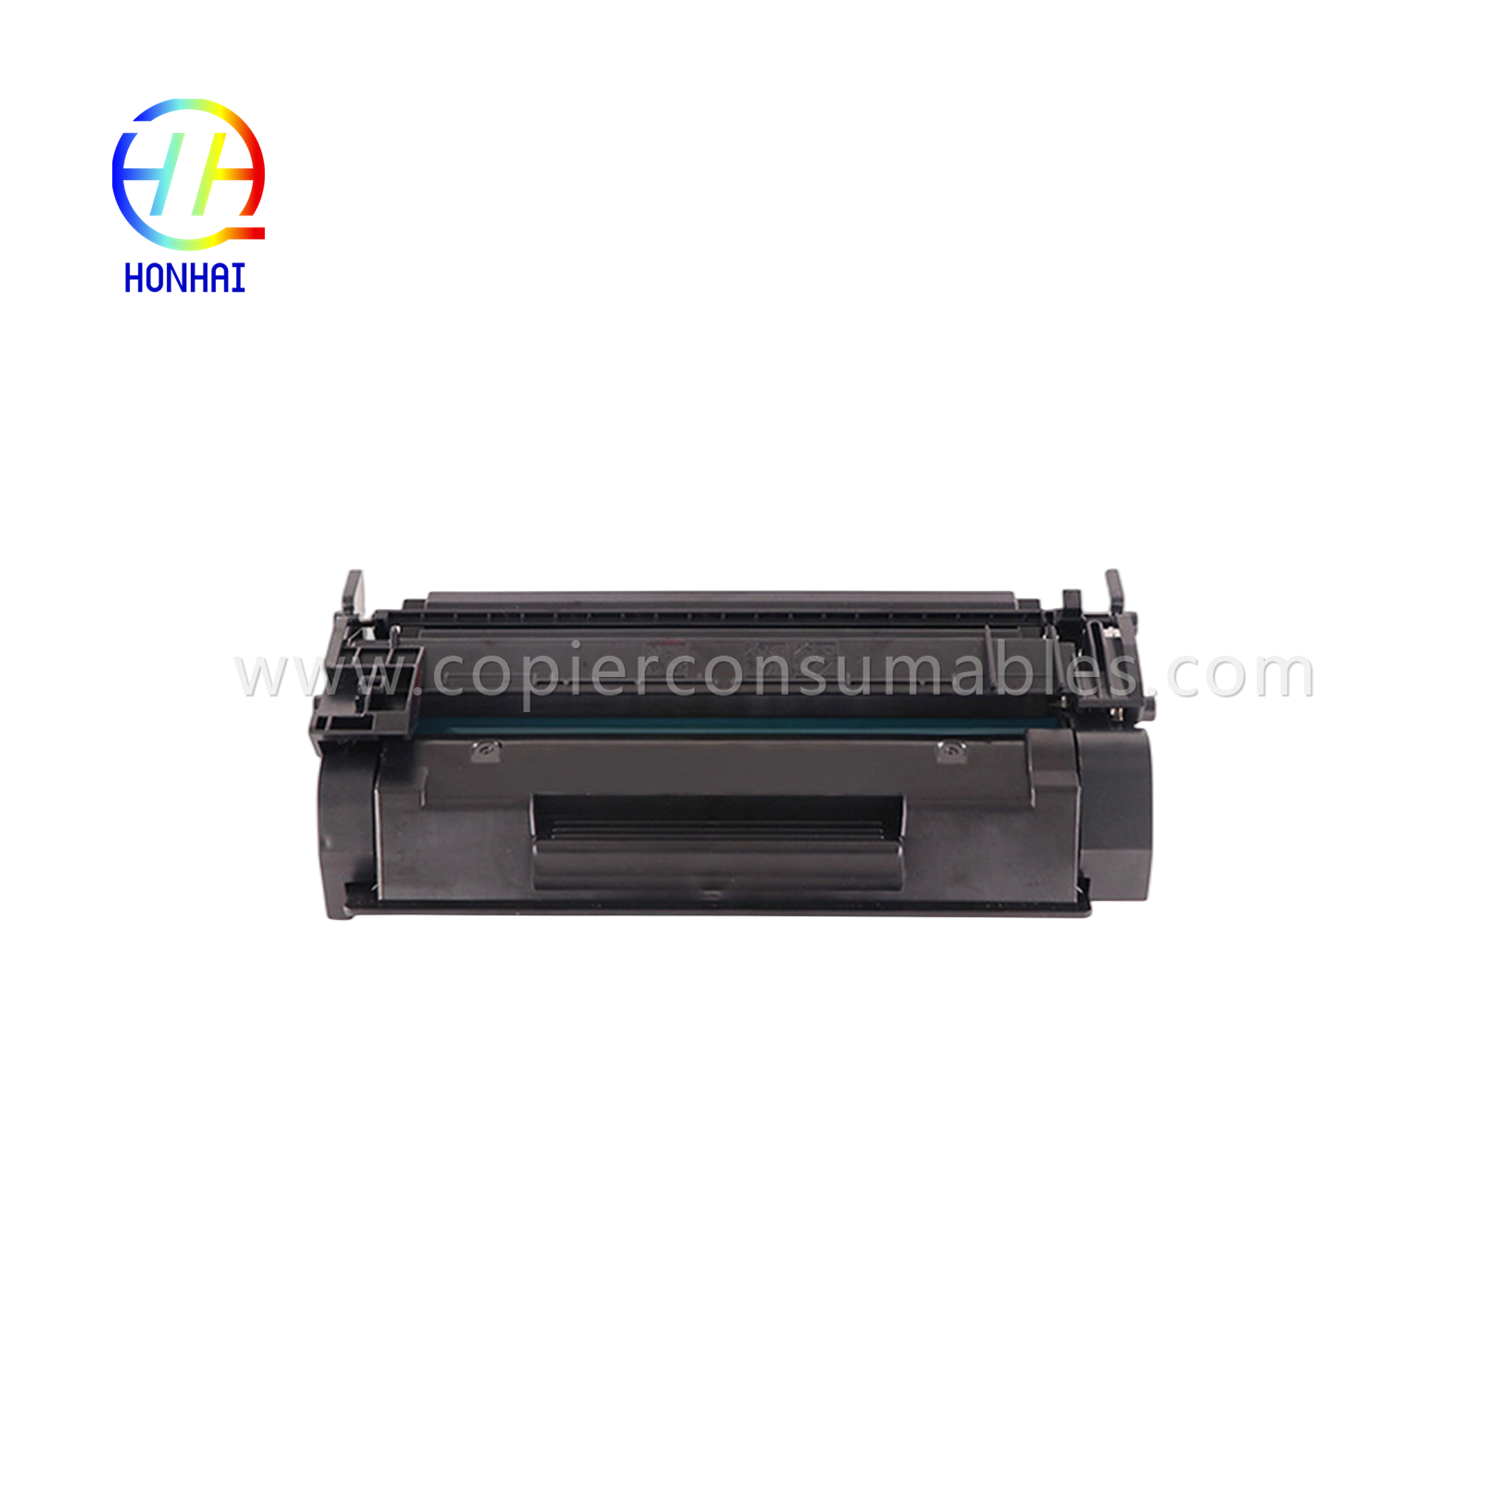 Toner Cartridge for HP CF259X LaserJet Pro M404n M404dn M404dw M428dw M428dn M428fdw